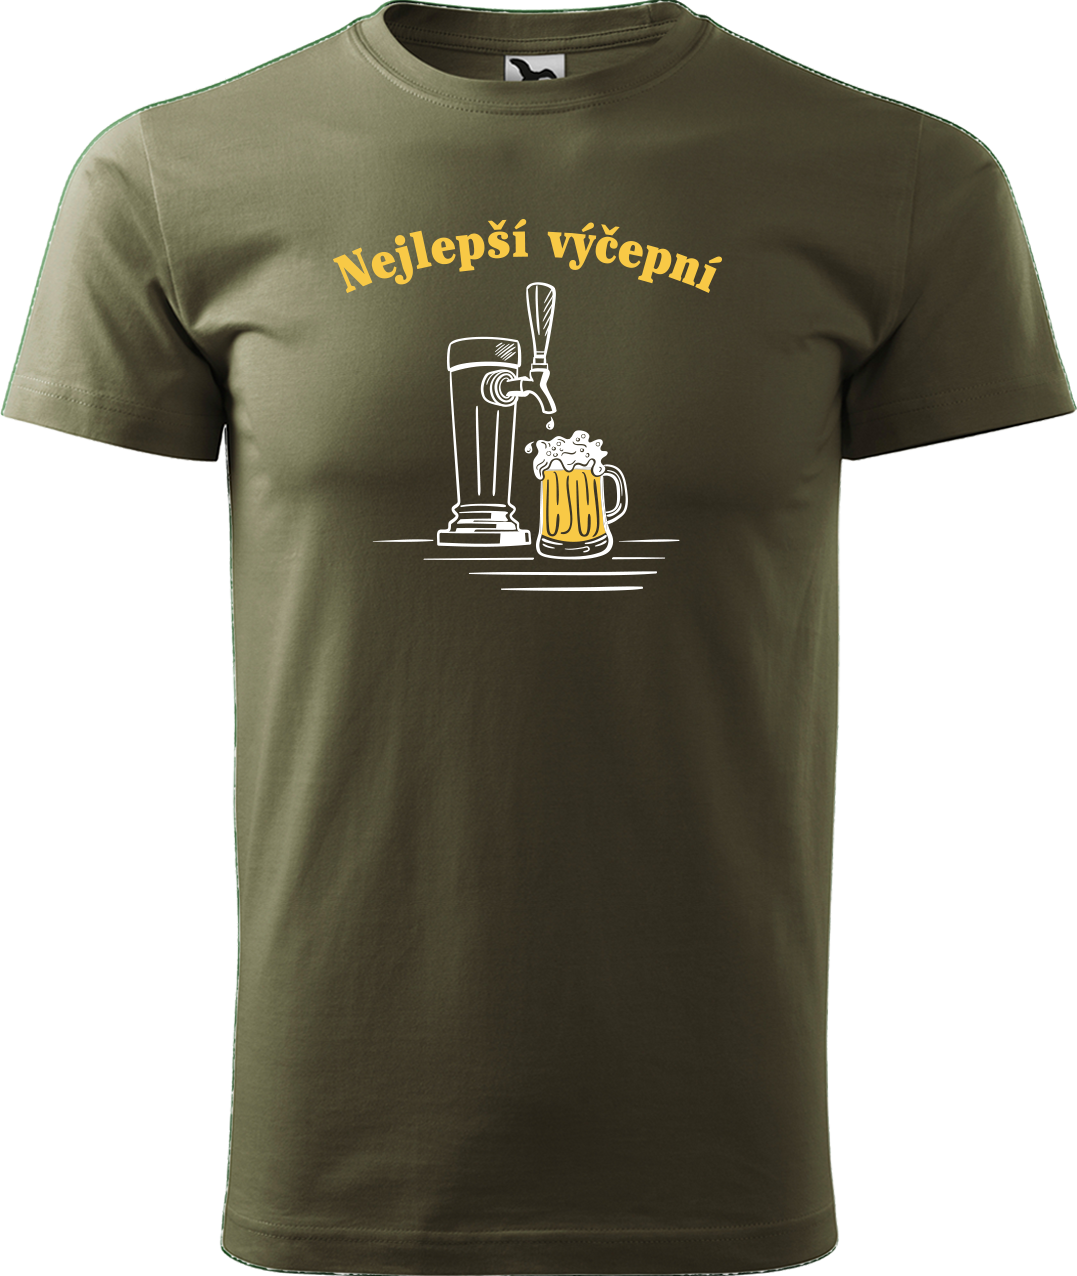 Pivní tričko - Nejlepší výčepní Velikost: S, Barva: Military (69)